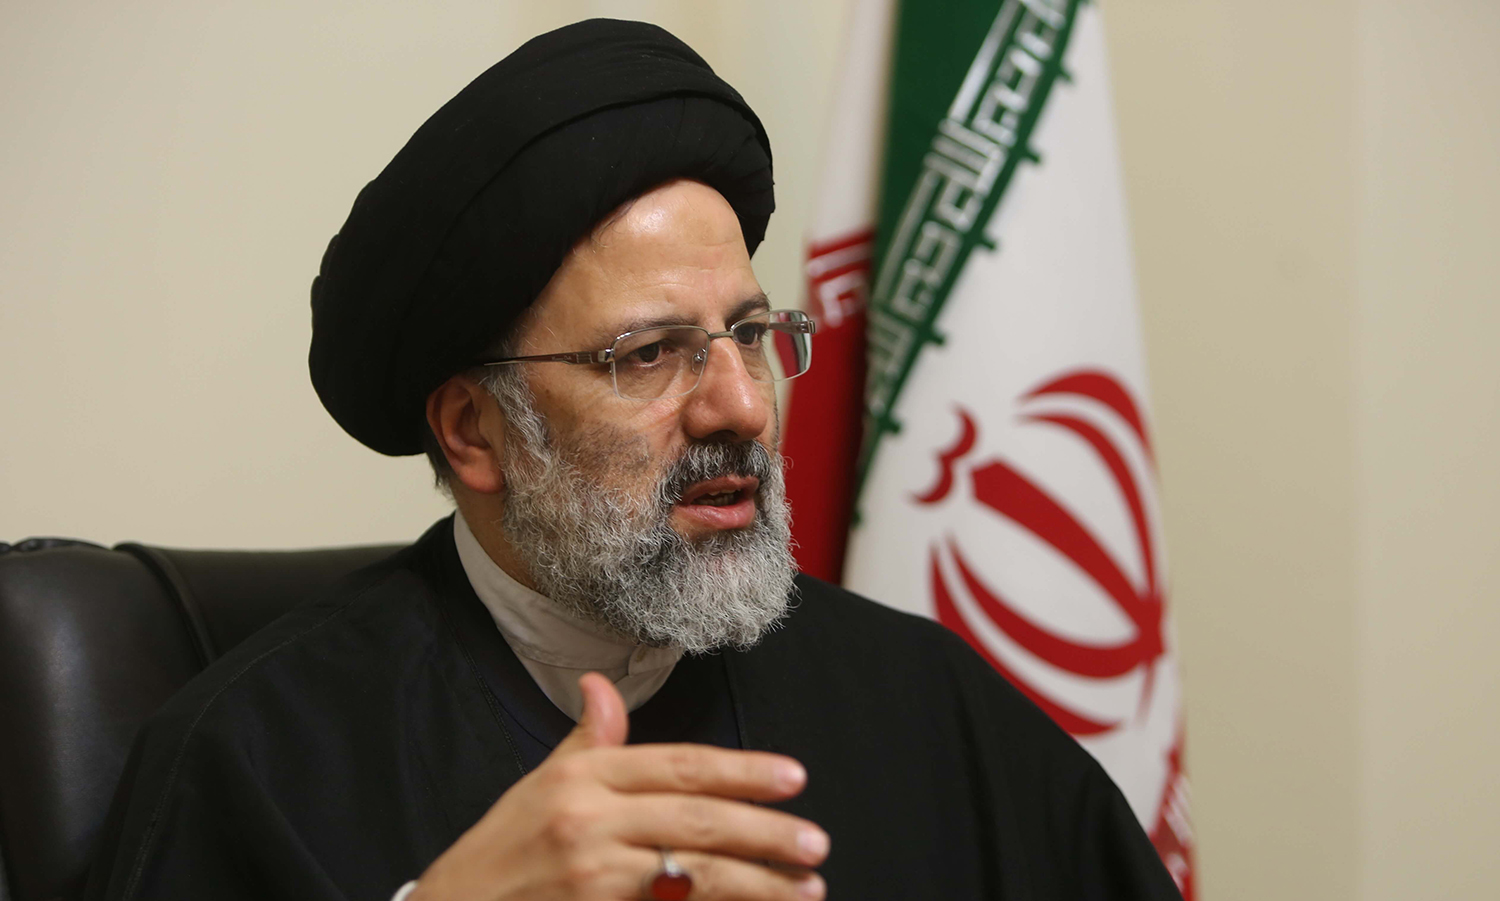 ابراهيم رئيسي| العفو الدولية: رئيس إيران الجديد فاز بالقمع.. ويجب محاكمته 1